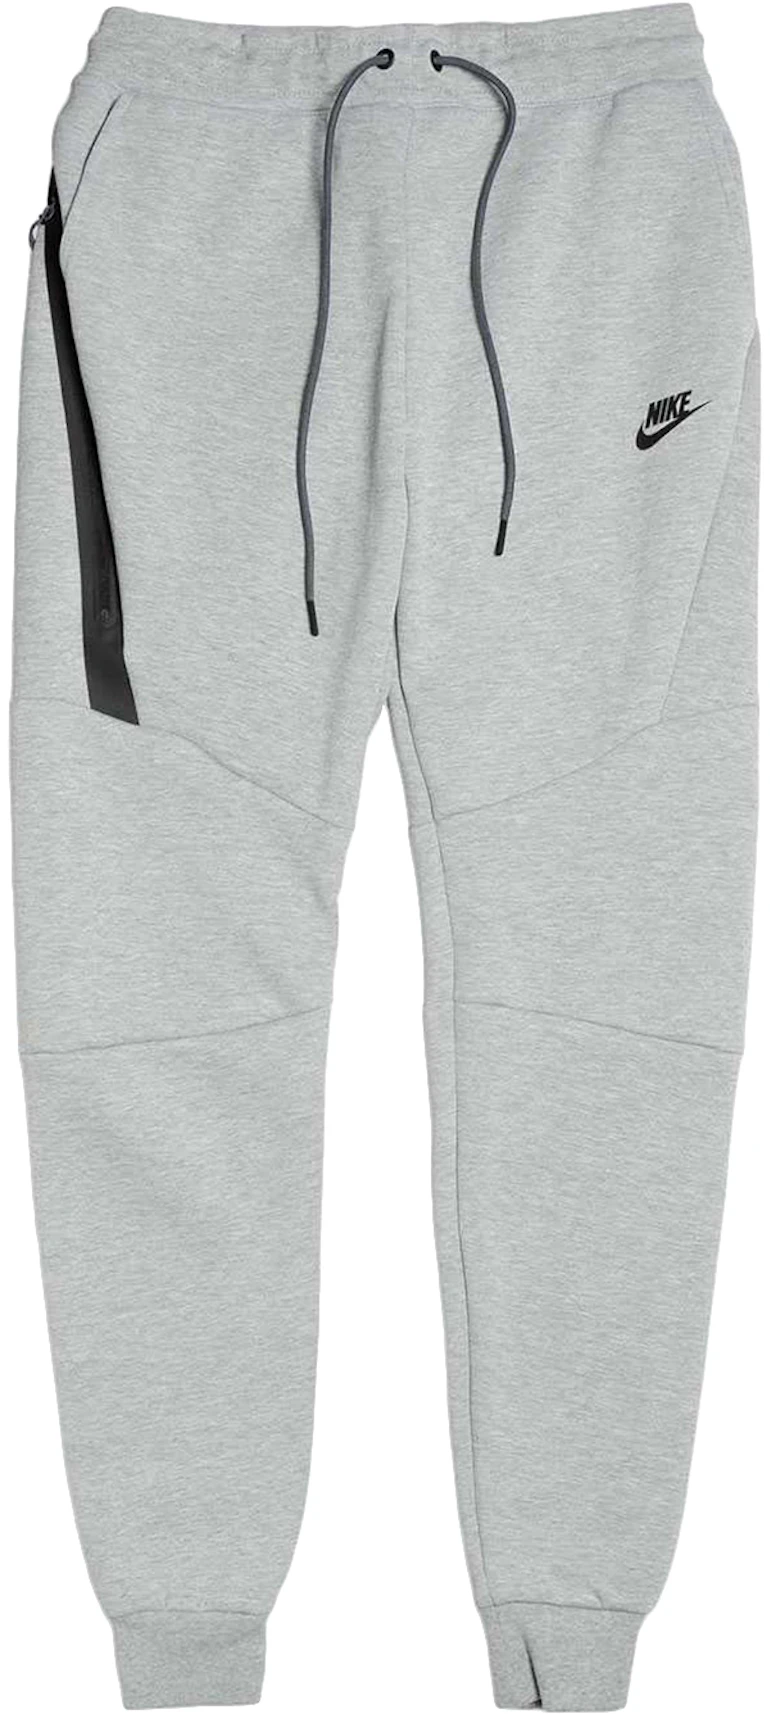 Commissie tuberculose ga winkelen Nike Sportswear Tech Fleece Pant Grey/Black - US